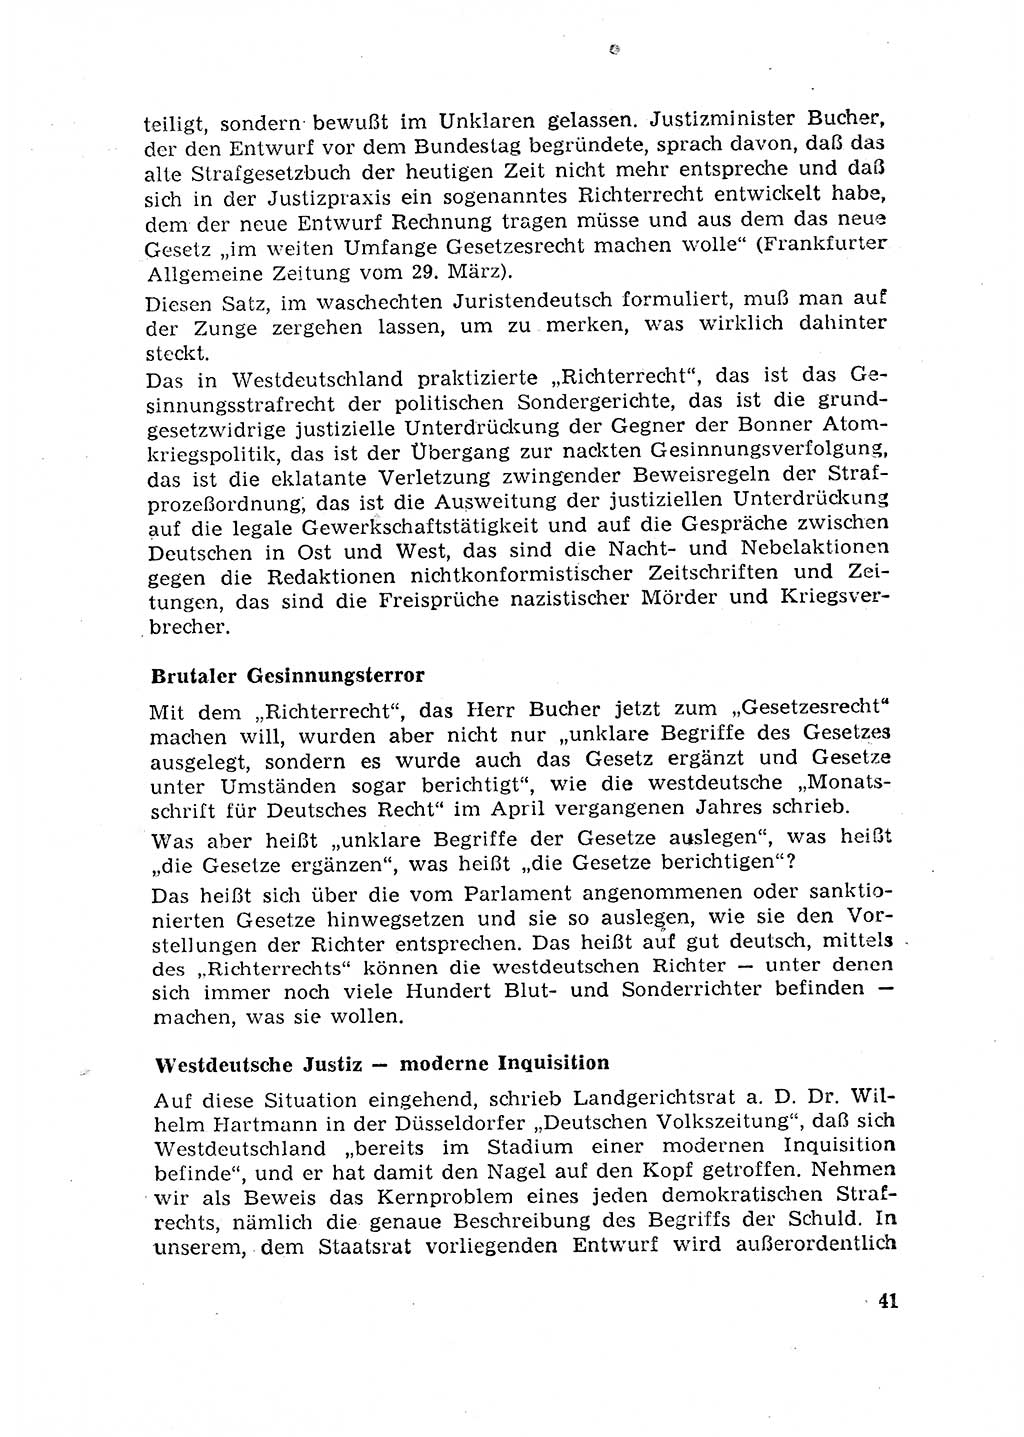 Rechtspflegeerlaß [Deutsche Demokratische Republik (DDR)] 1963, Seite 41 (R.-Pfl.-Erl. DDR 1963, S. 41)